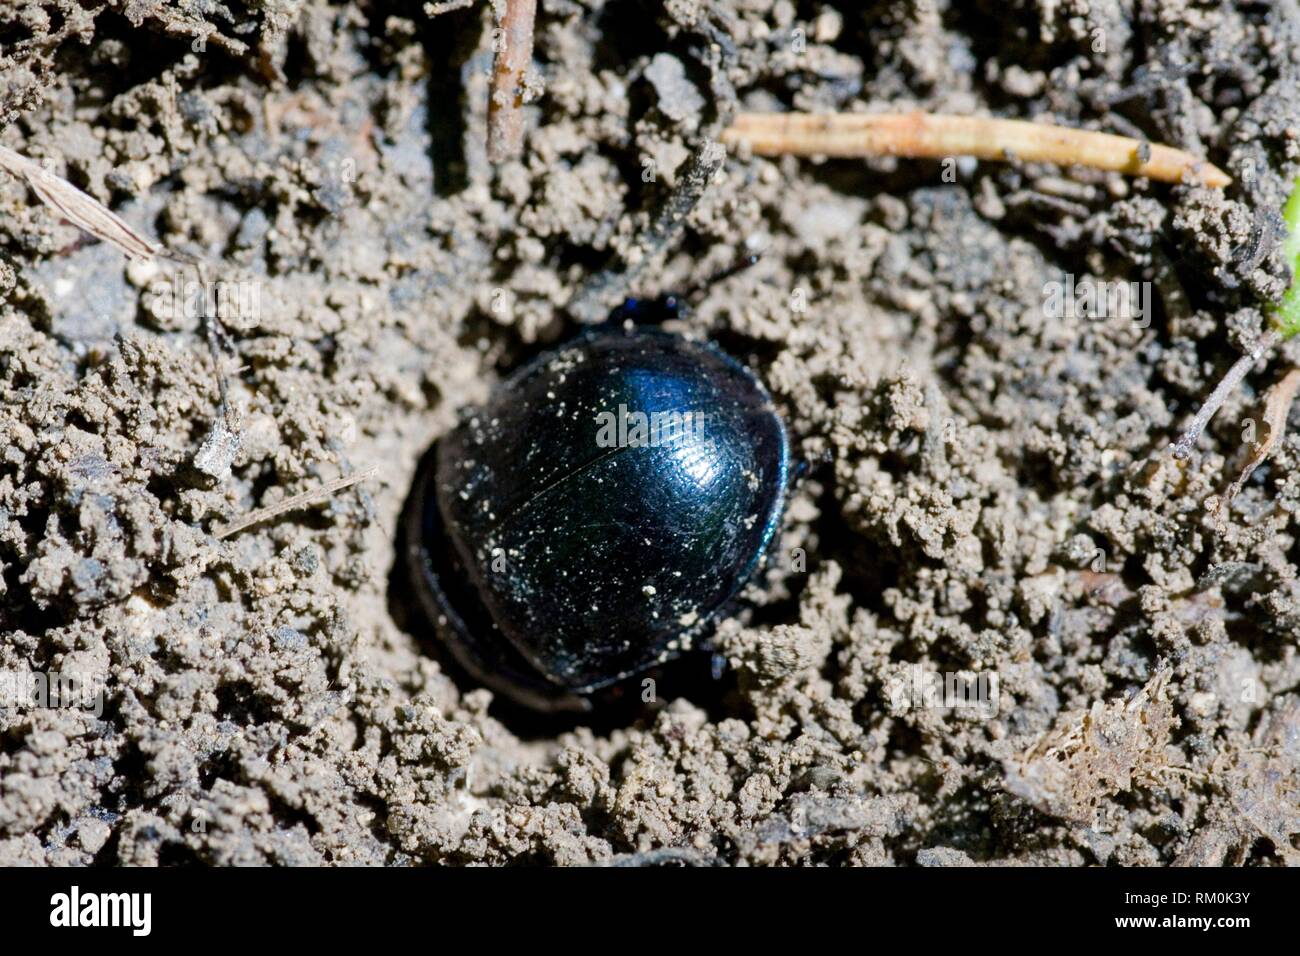 Dor Beetle, Anoplotrupes stercorosus, grande rotund terra-noioso dung beetle di profonda metallico blu mezzanotte, facilmente confusa con Geotrupes o Foto Stock